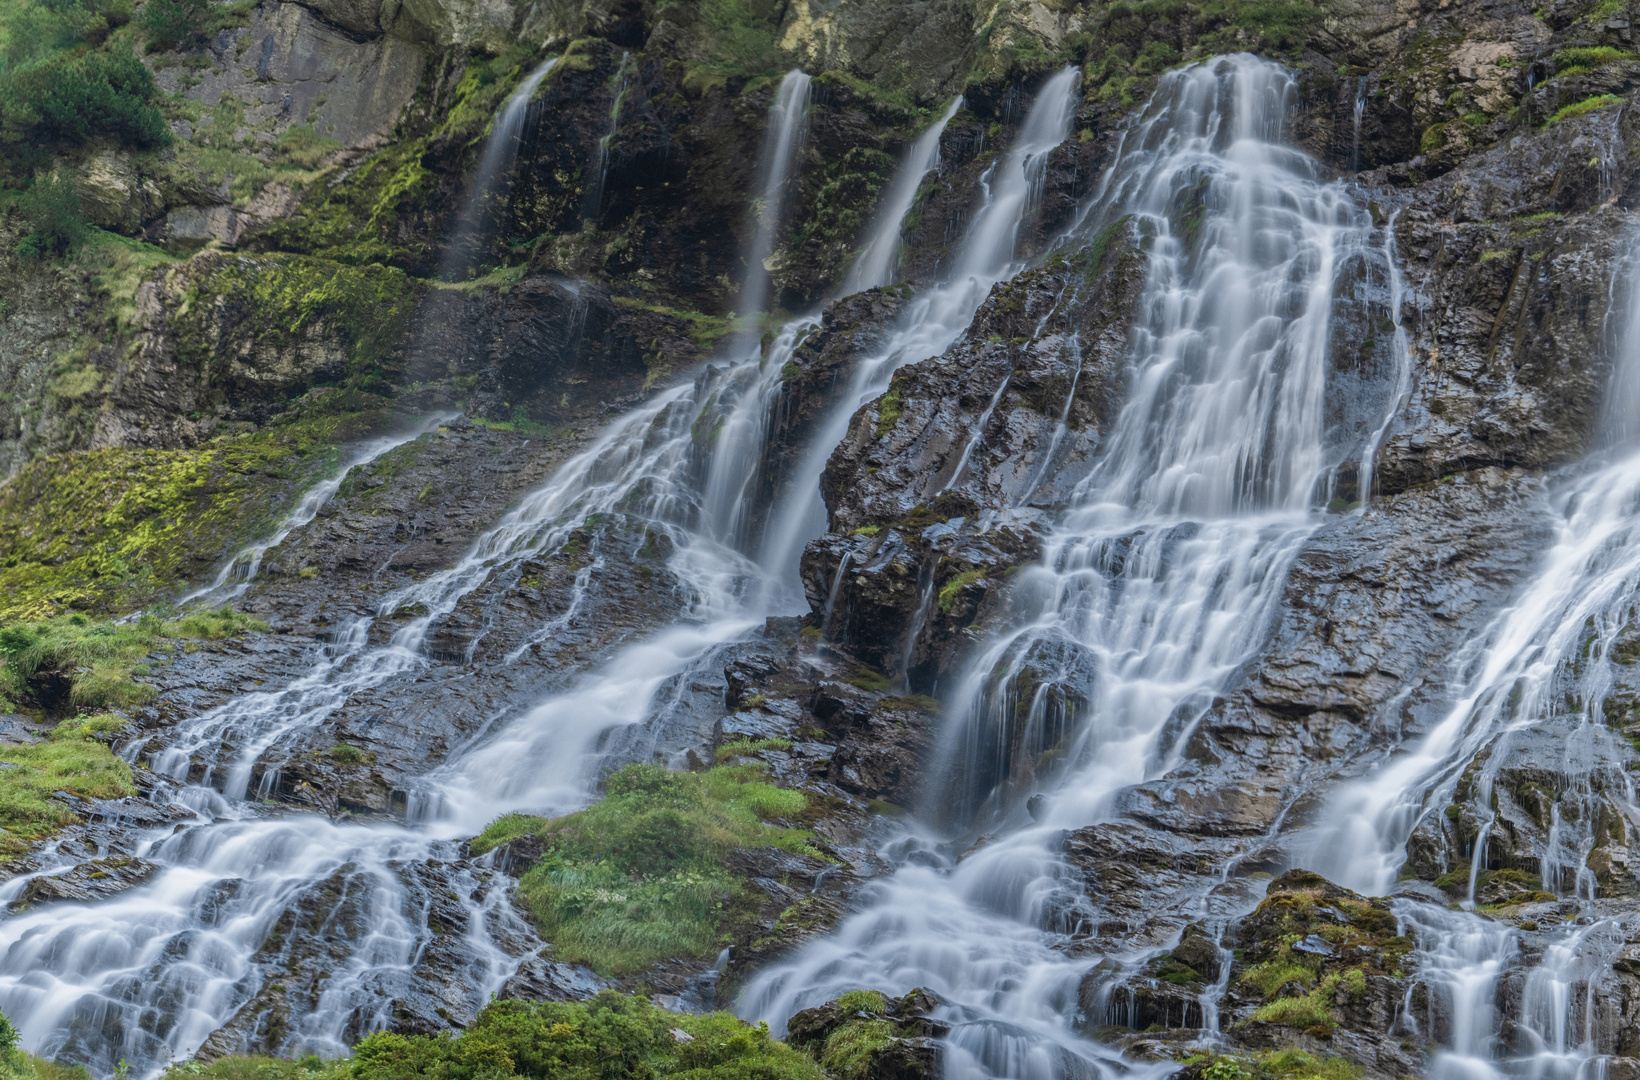 Wasserfall im schönen Berner Oberland